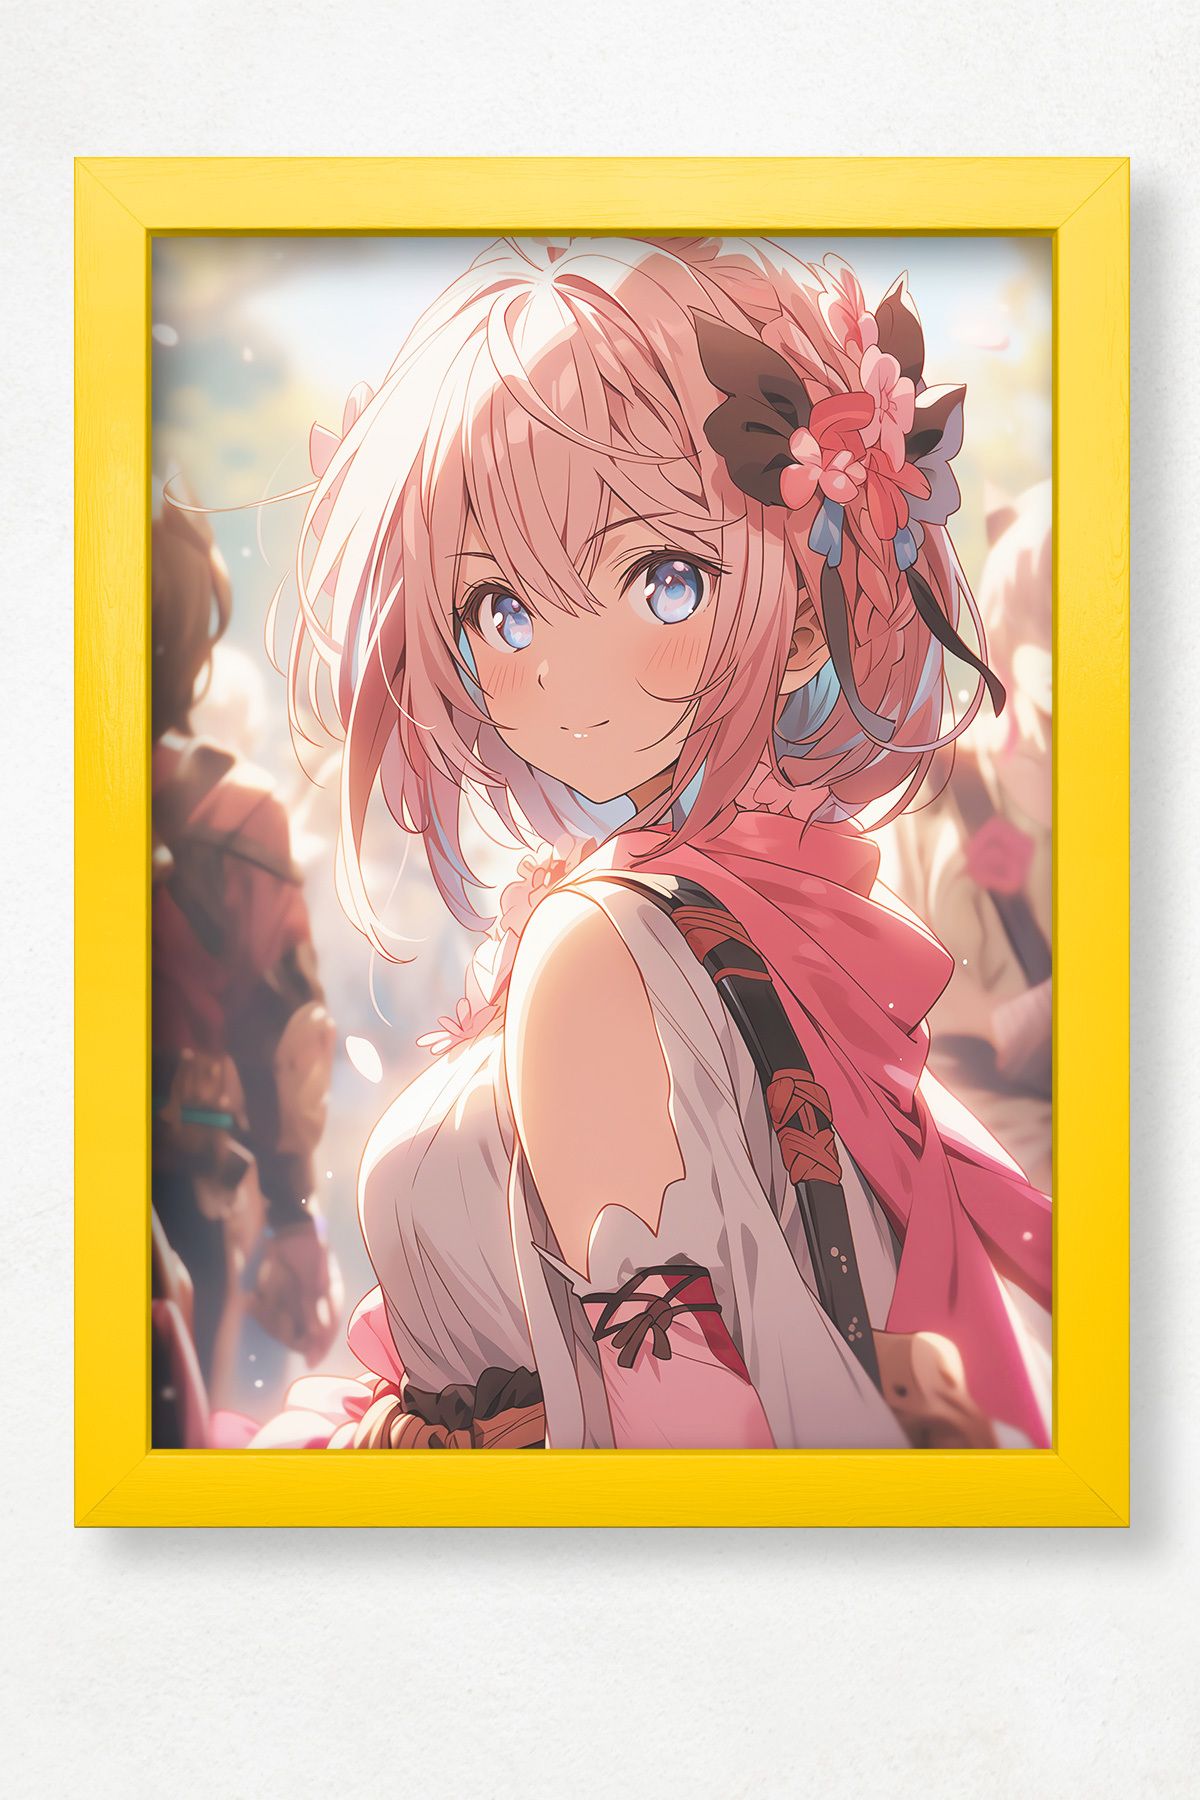 DuoArt Anime Fighter Girl Anime Poster/Doğal Ahşap Çerçeveli Poster/Çerçeve Rengi:Zen Sarı